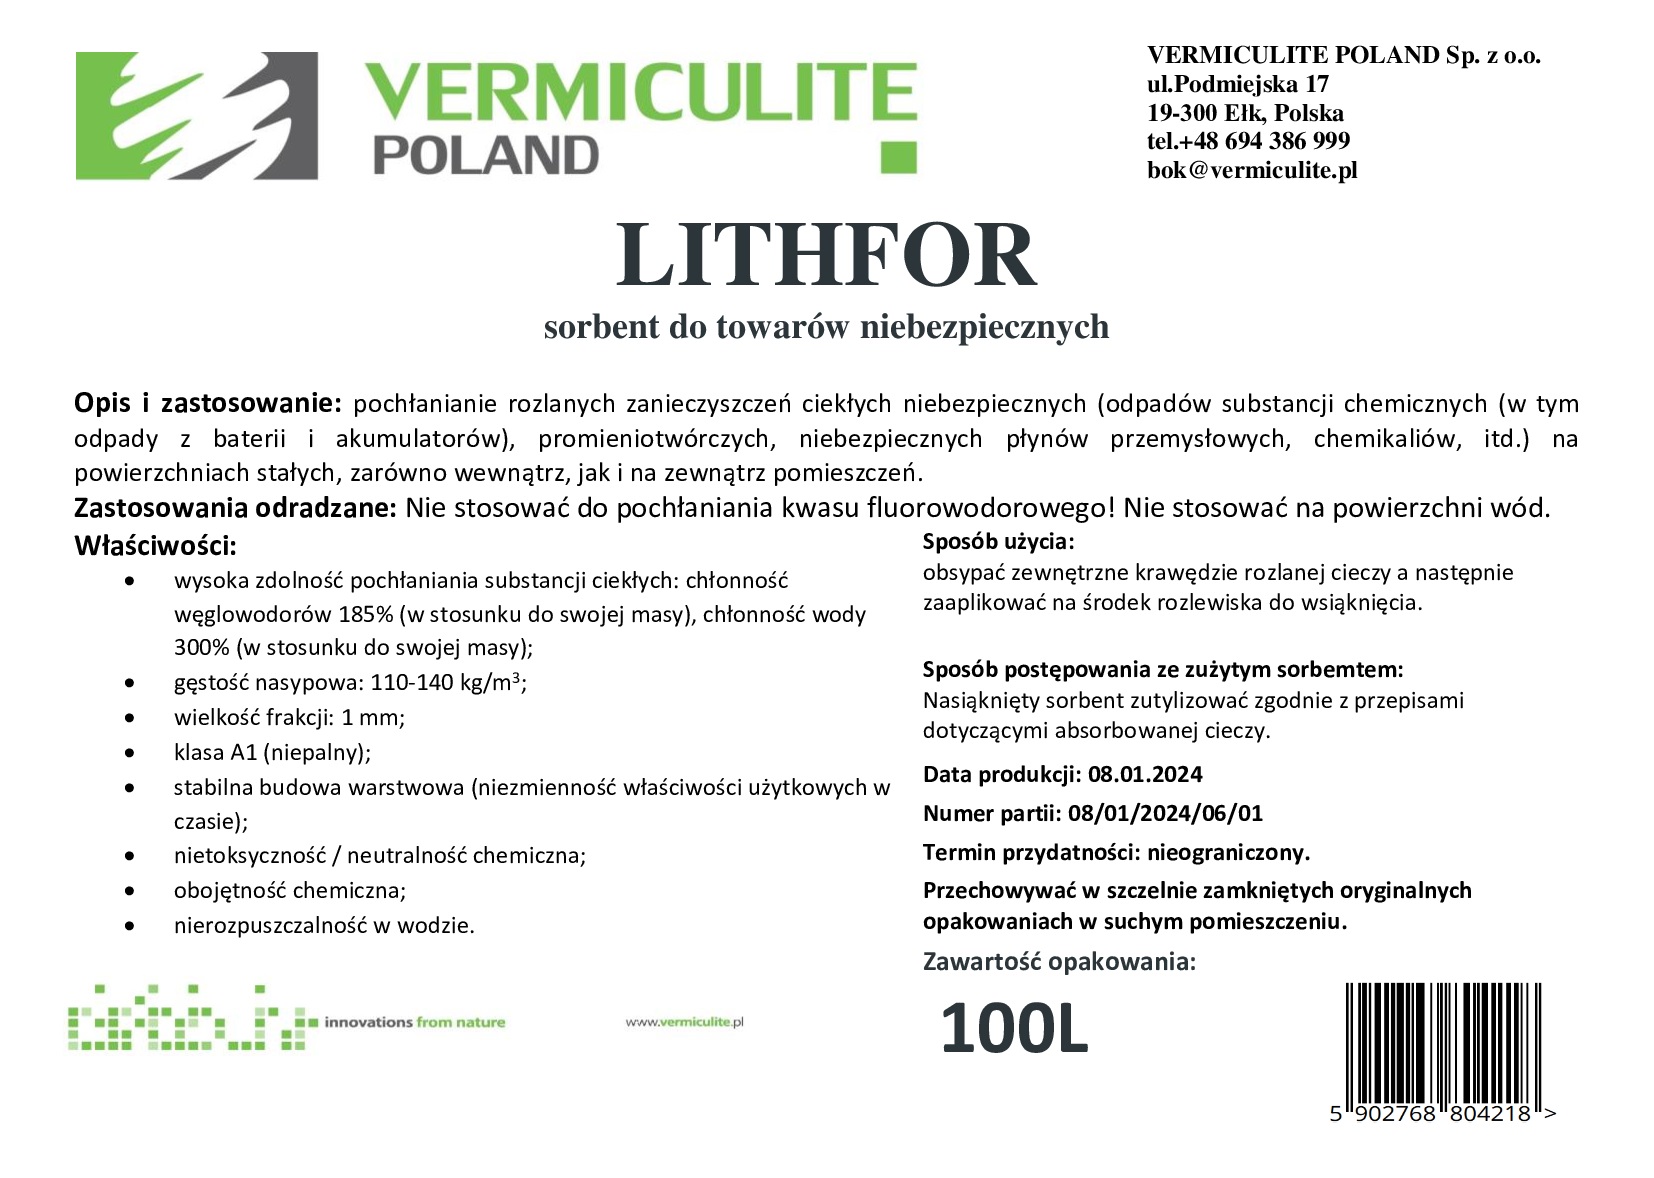 Sorbent LITHFOR - 100L